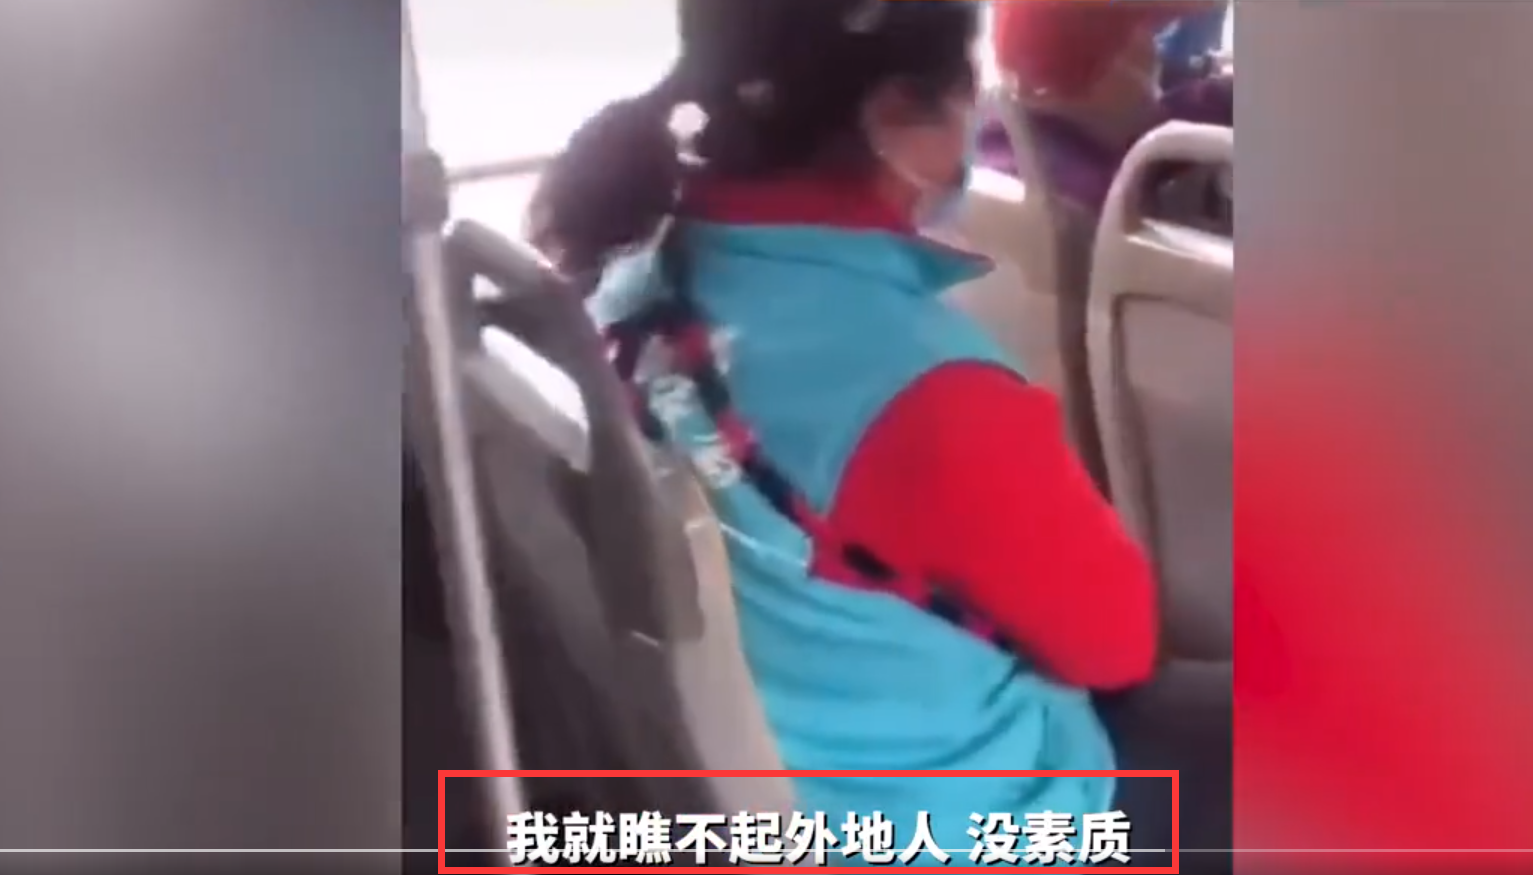 “臭外地的，到北京要饭来了”，北京大妈嫌女孩让座慢，对其贬低大骂